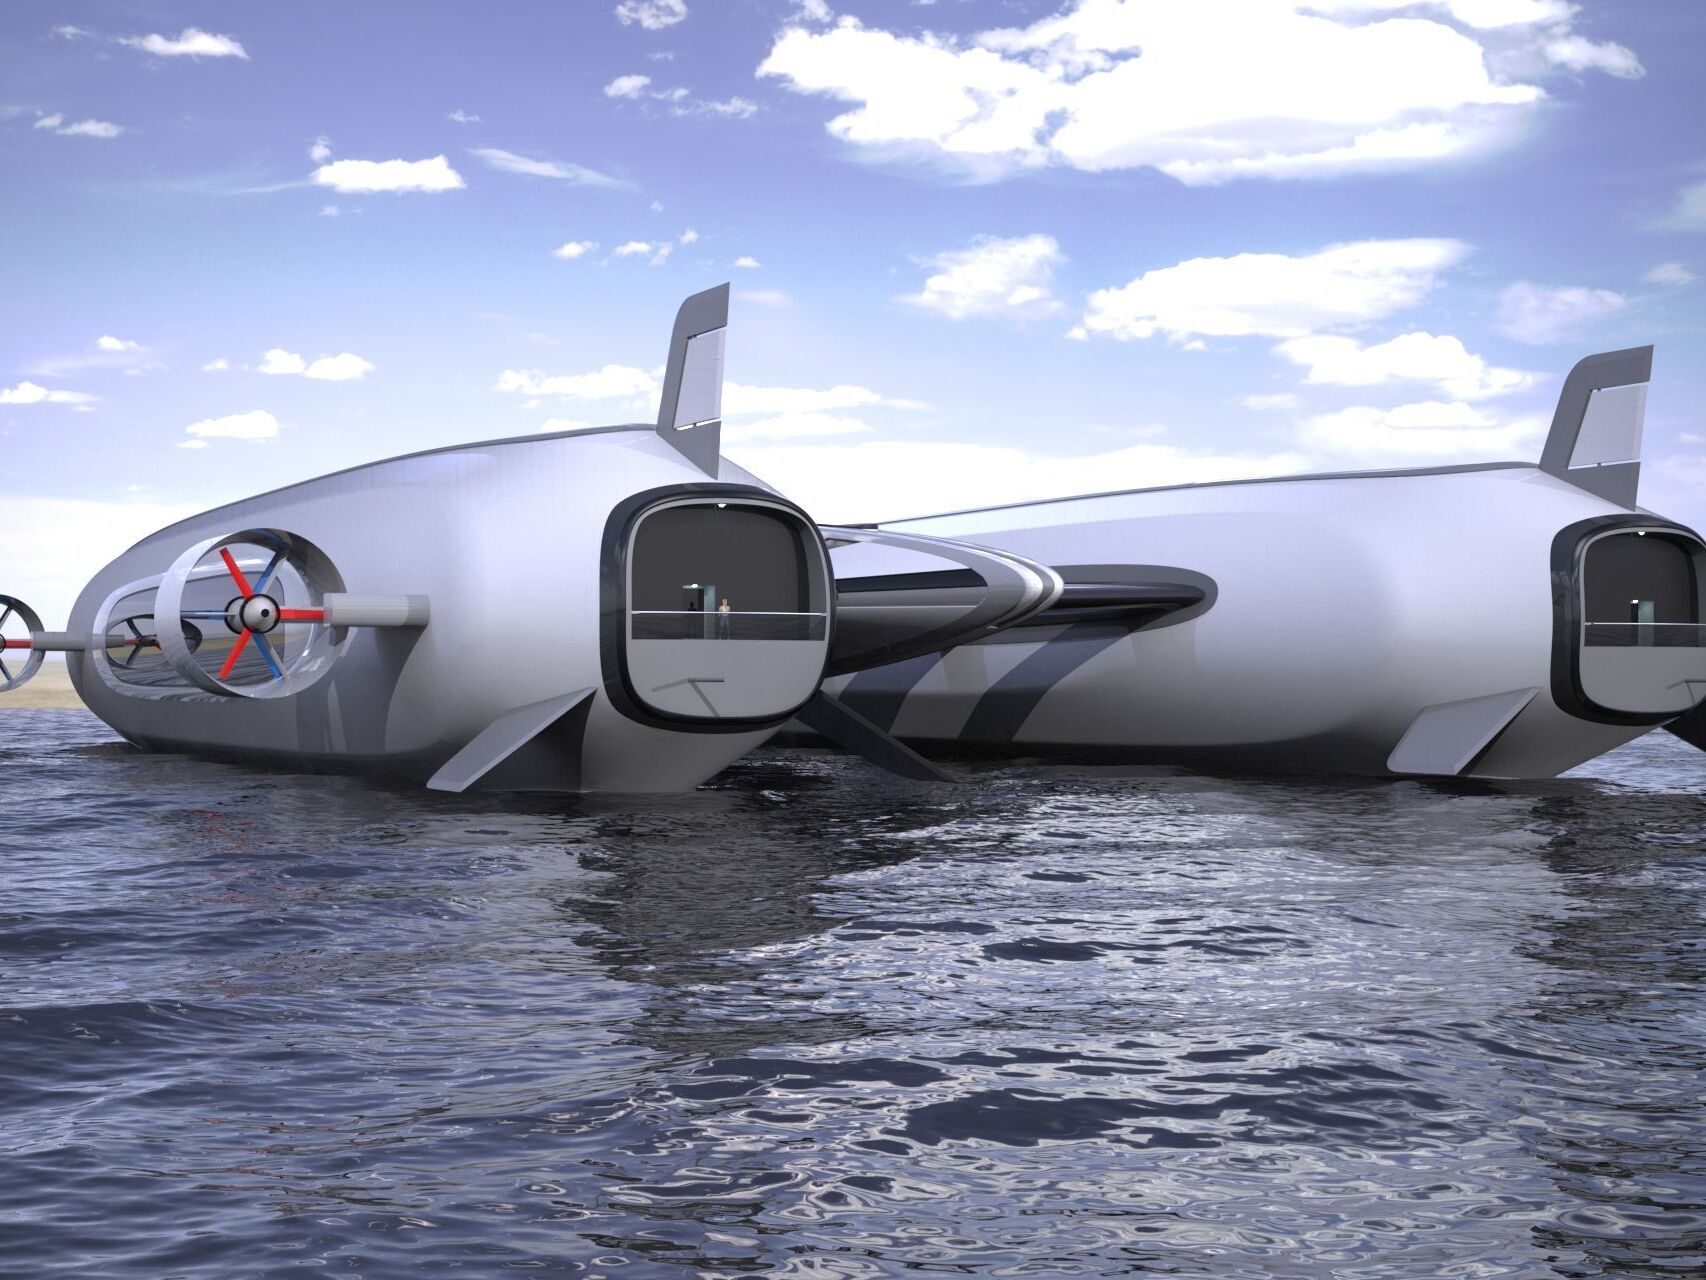 Konsep 'Sky Yacht' dikembangkan oleh studio Desain Lazzarini untuk mobilitas udara dan air yang berkelanjutan